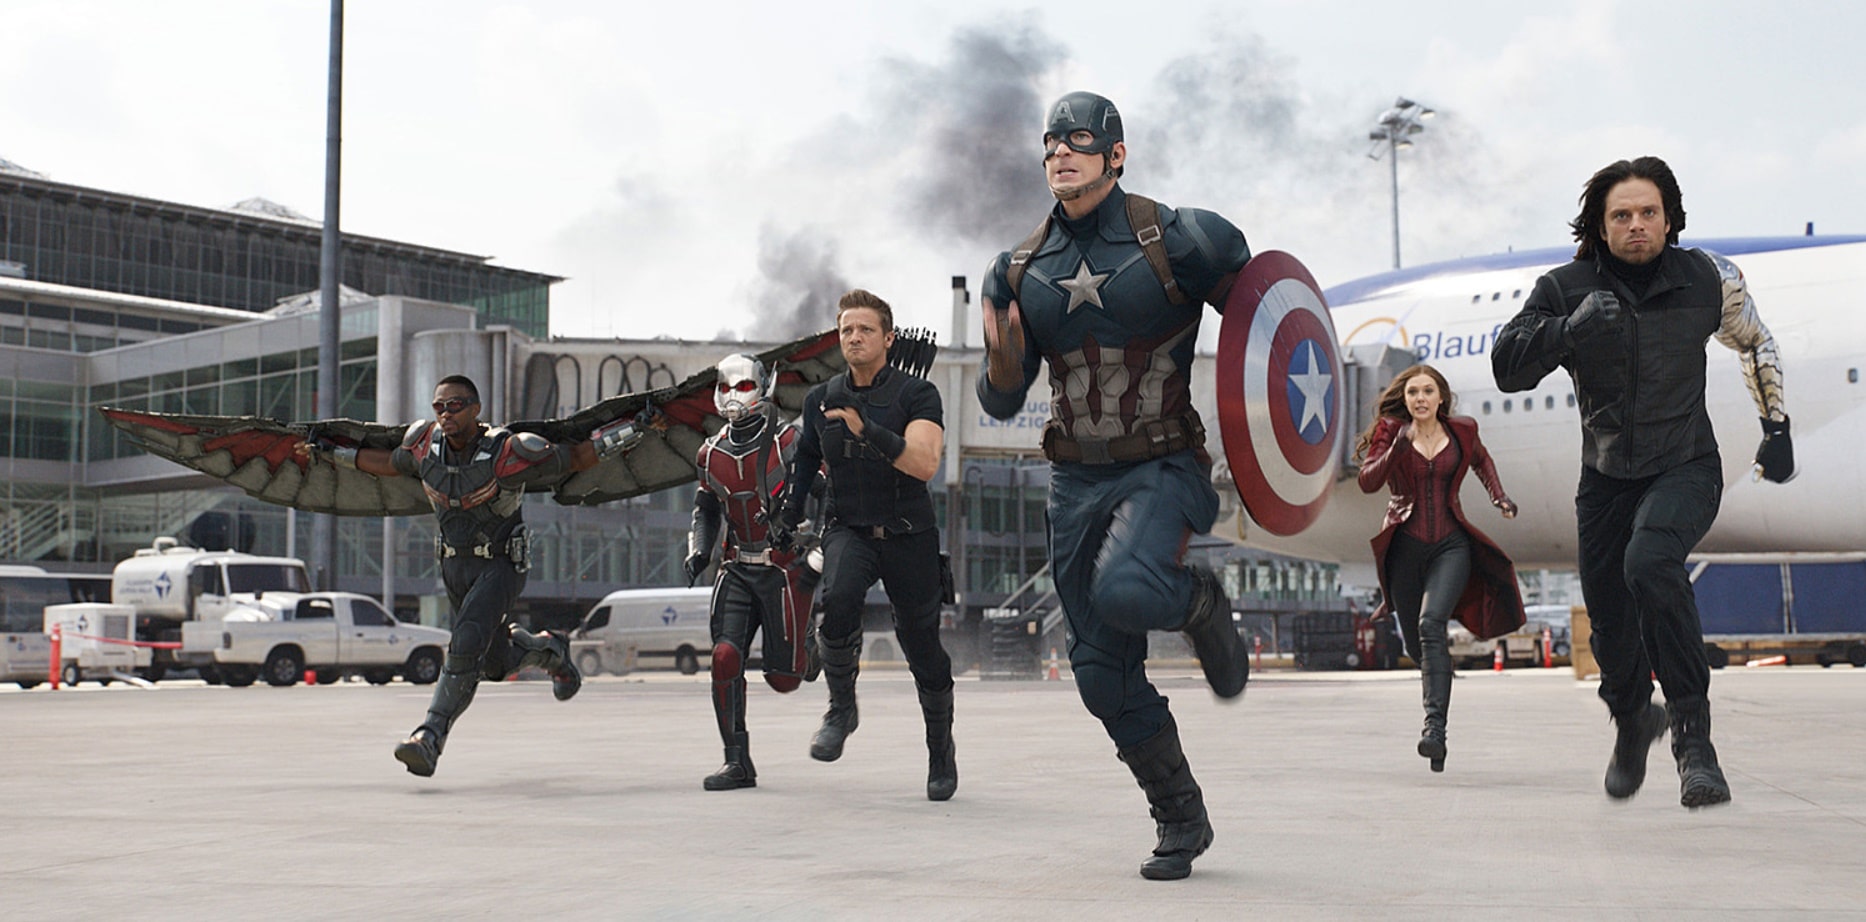 Первый мститель: Противостояние / Captain America: Civil War (2016): кадр из фильма